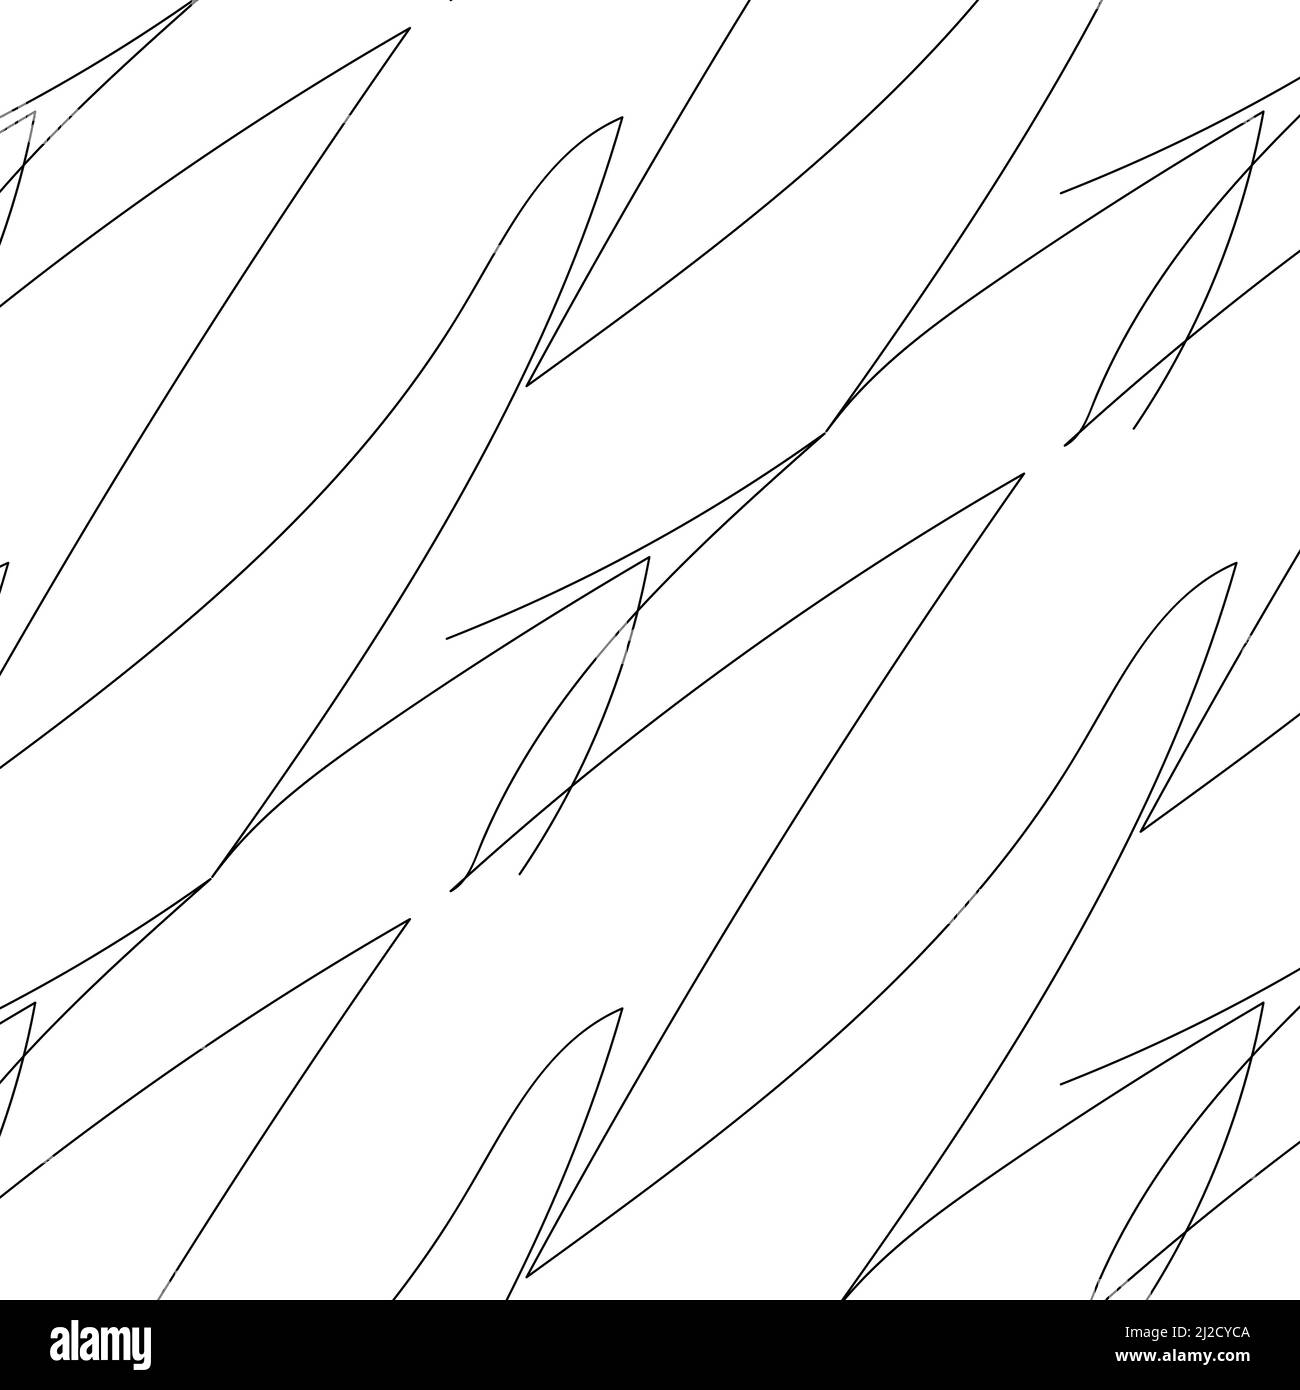 Zen art Doodle ornato sfondo astratto. Scribble lineari in bianco e nero disegnate a mano. Texture creativa in bianco e nero zenart. Ripetizione casuale disegno caotico della superficie a zentangle. Illustrazione vettoriale Illustrazione Vettoriale